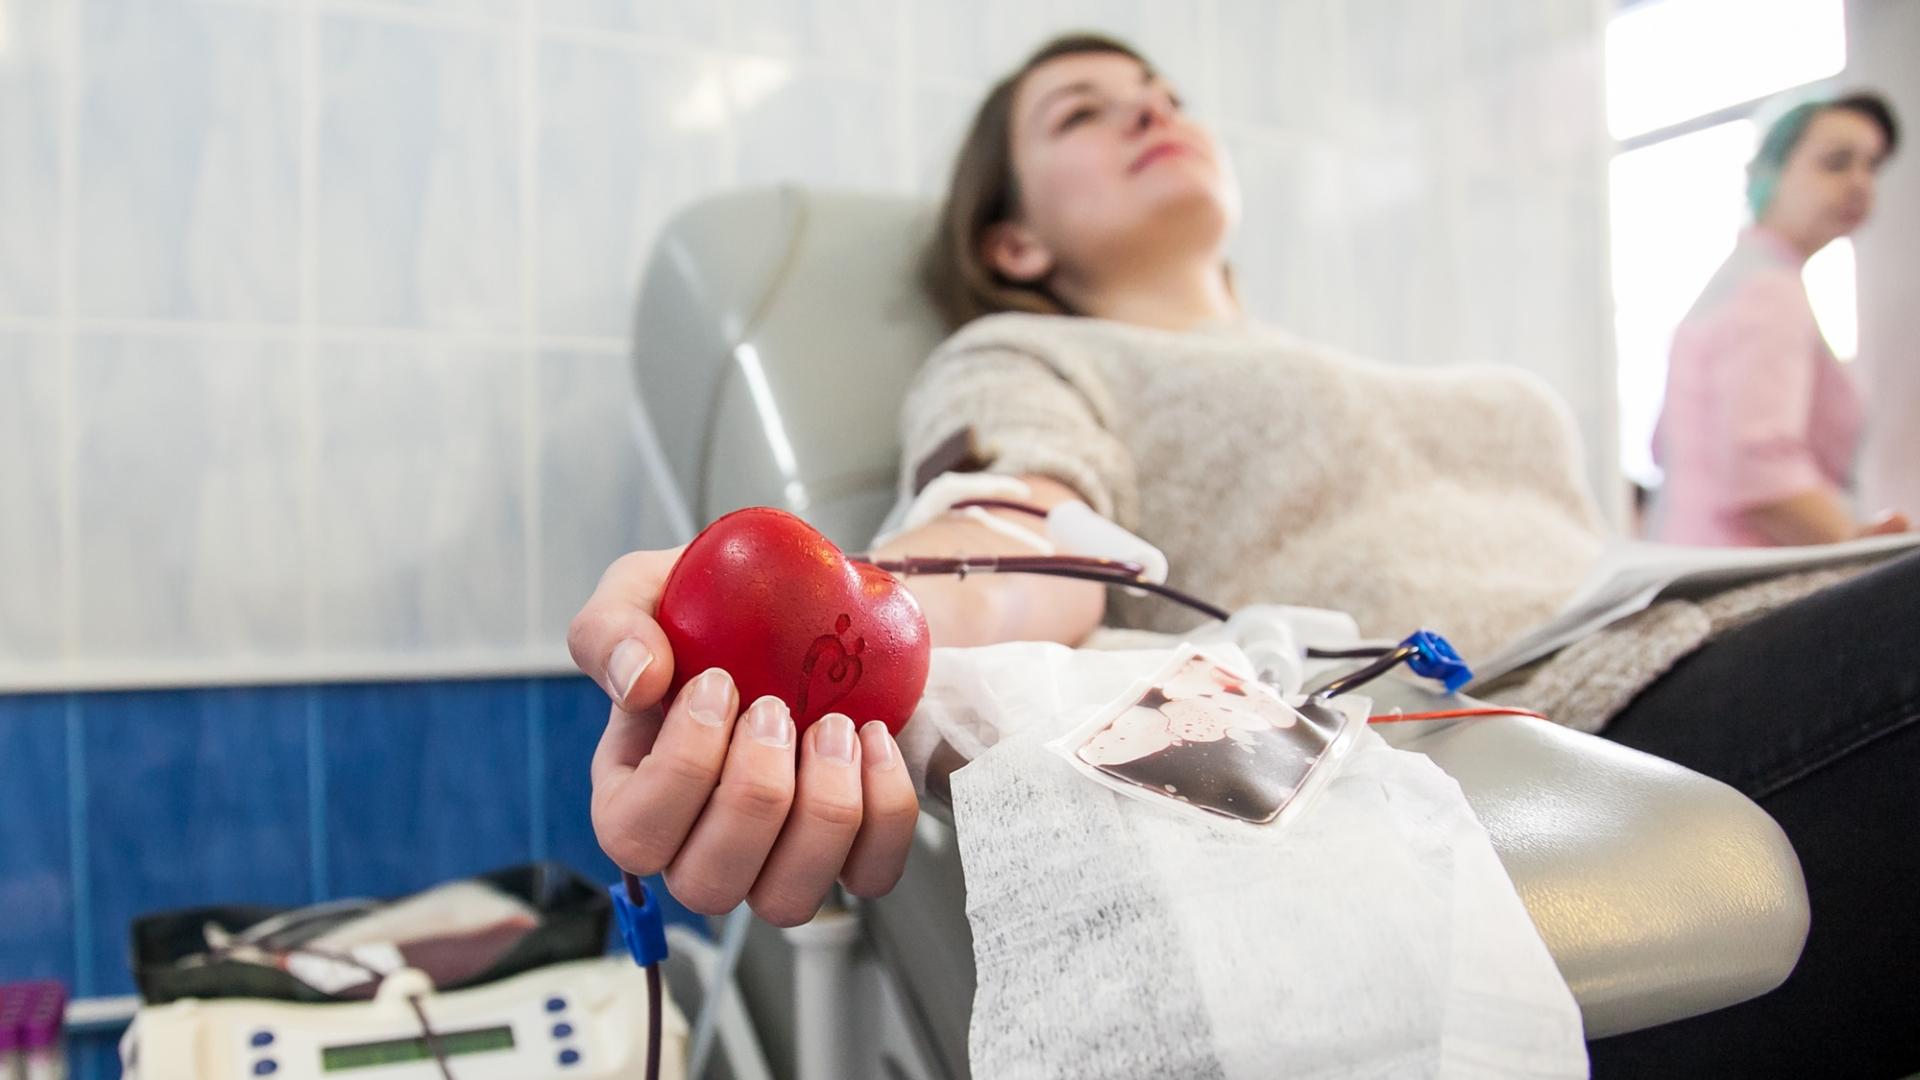 День донора: какова цена крови в России?